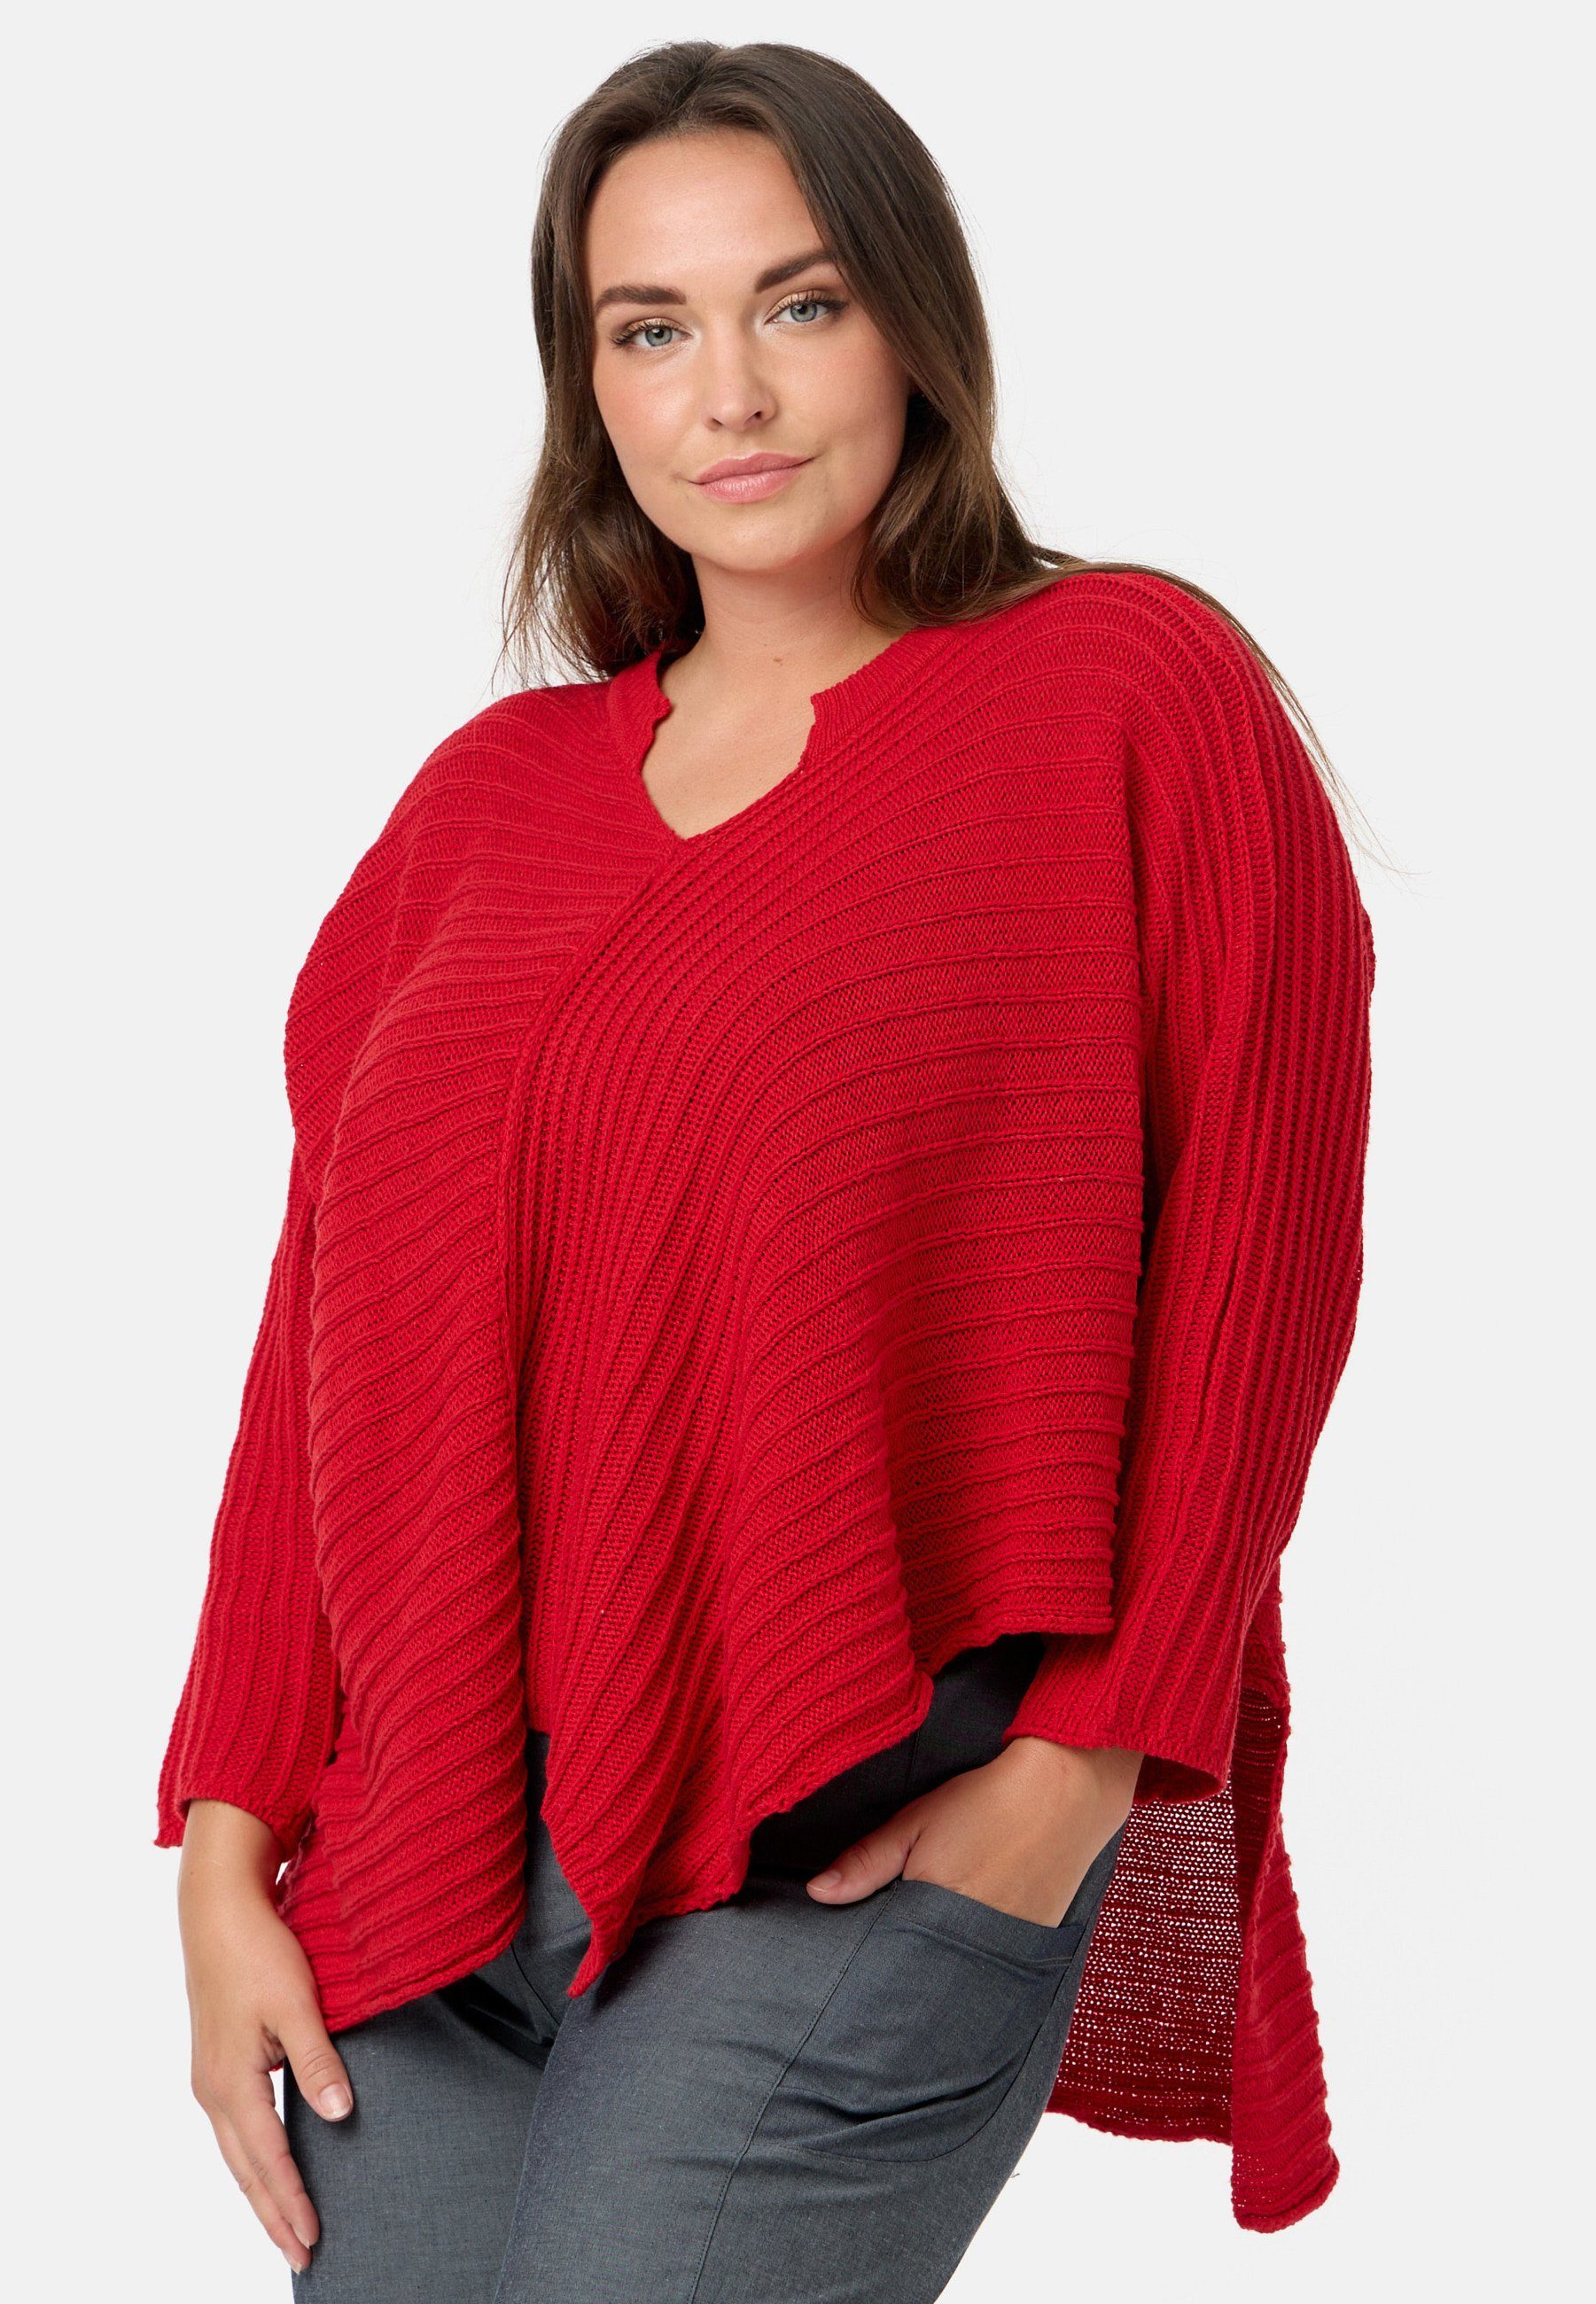 Kekoo Strickpullover Rot asymmetrischem 100% aus Baumwolle 'Pure' Strickshirt Stil im